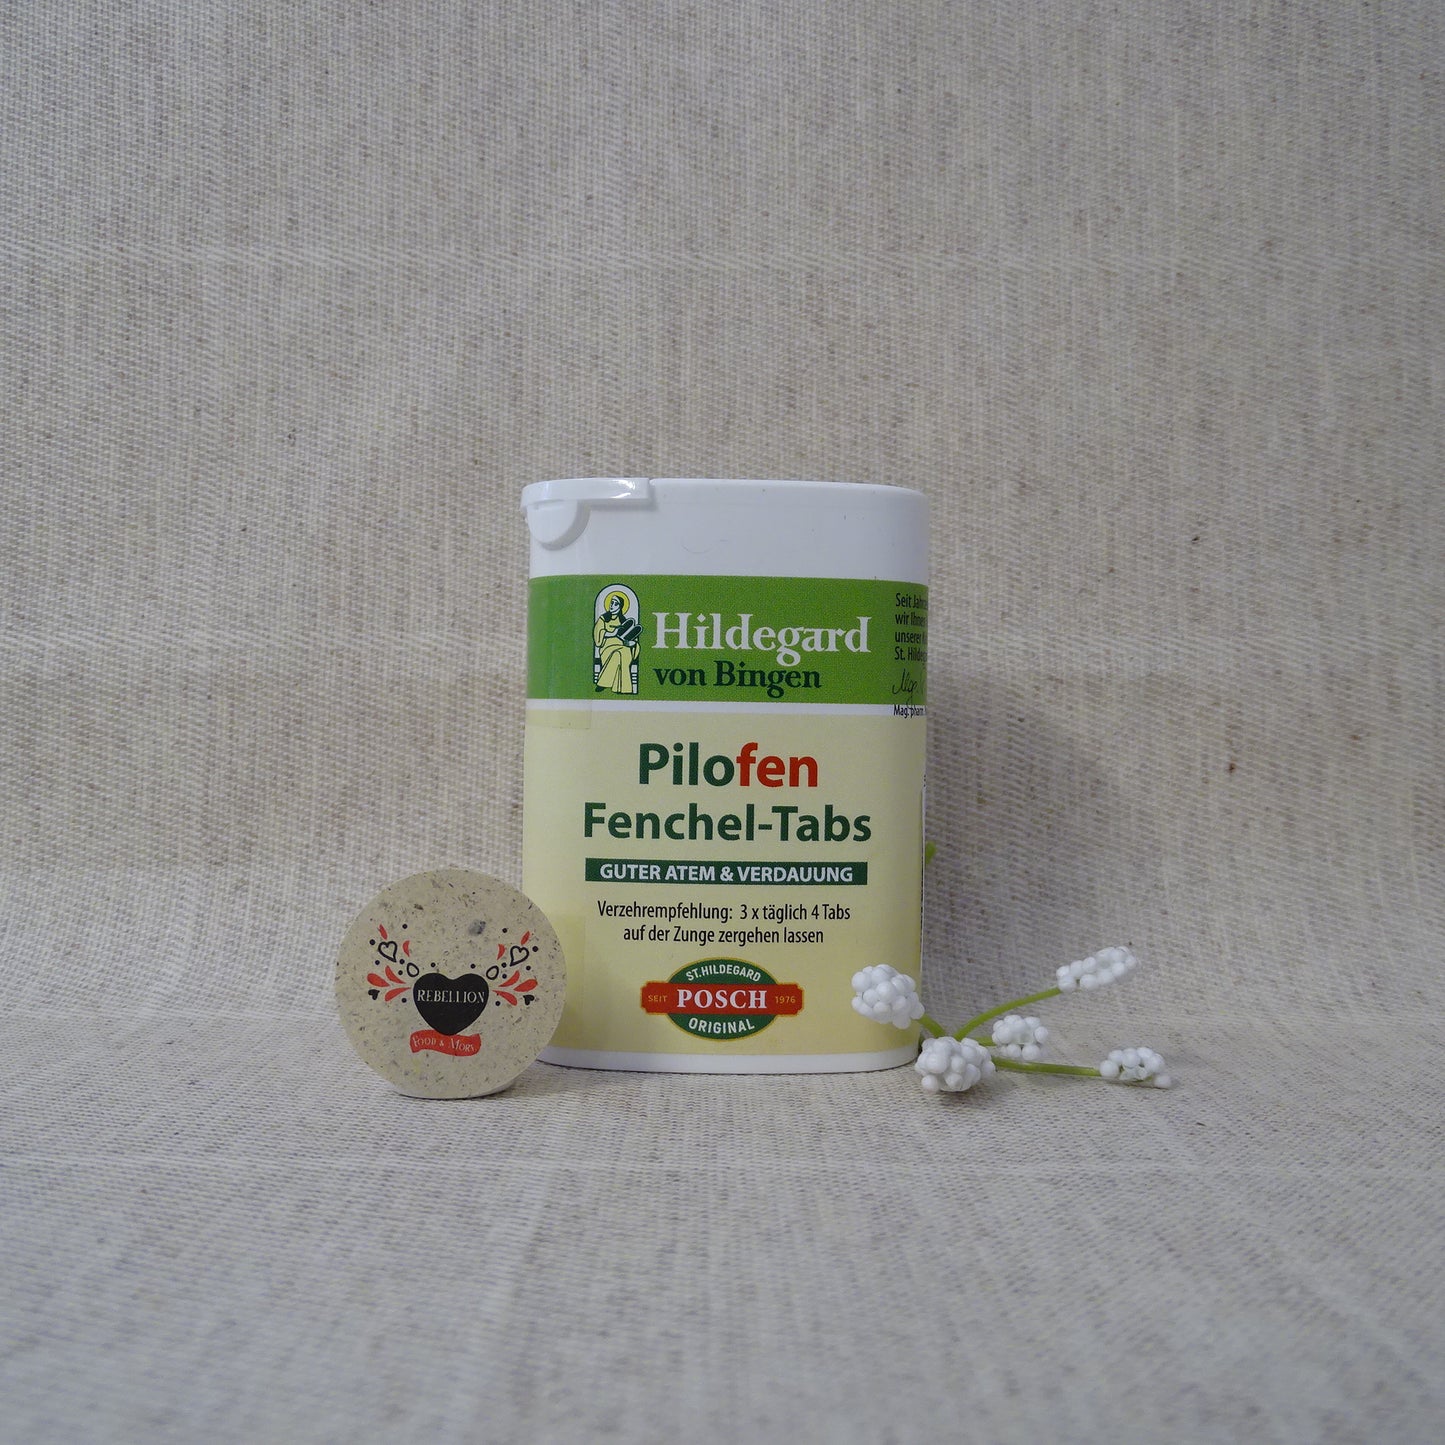 Pilofen® Fenchel-Tabs St.Hildegard Posch 25g